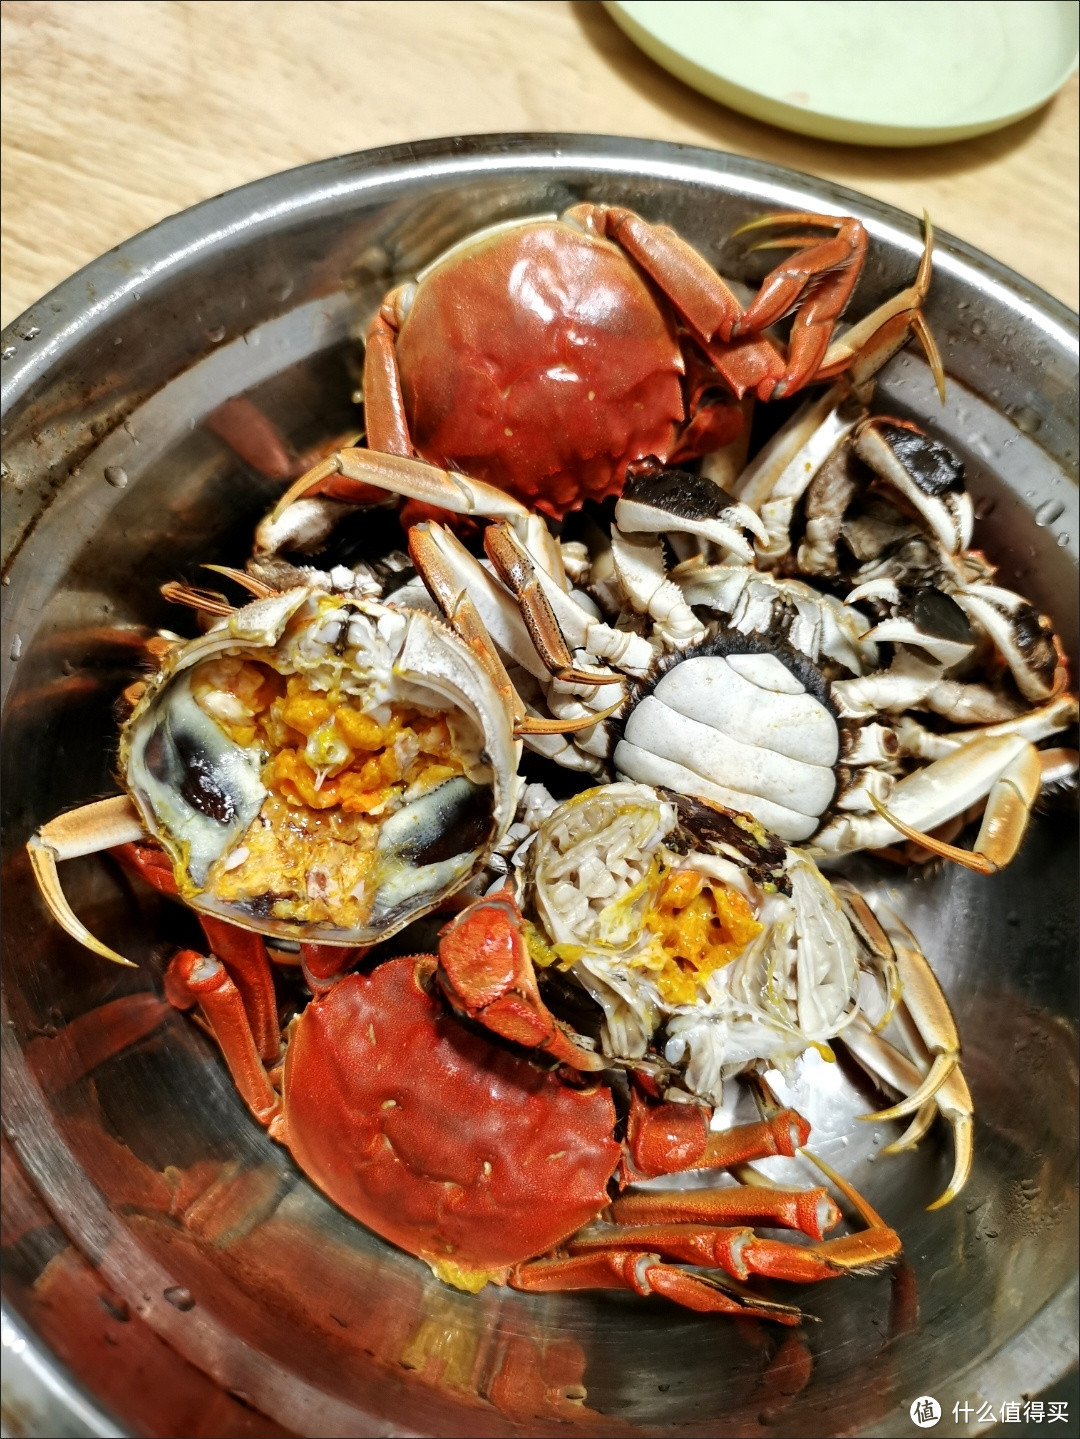 分享一下螃蟹的三种吃法。